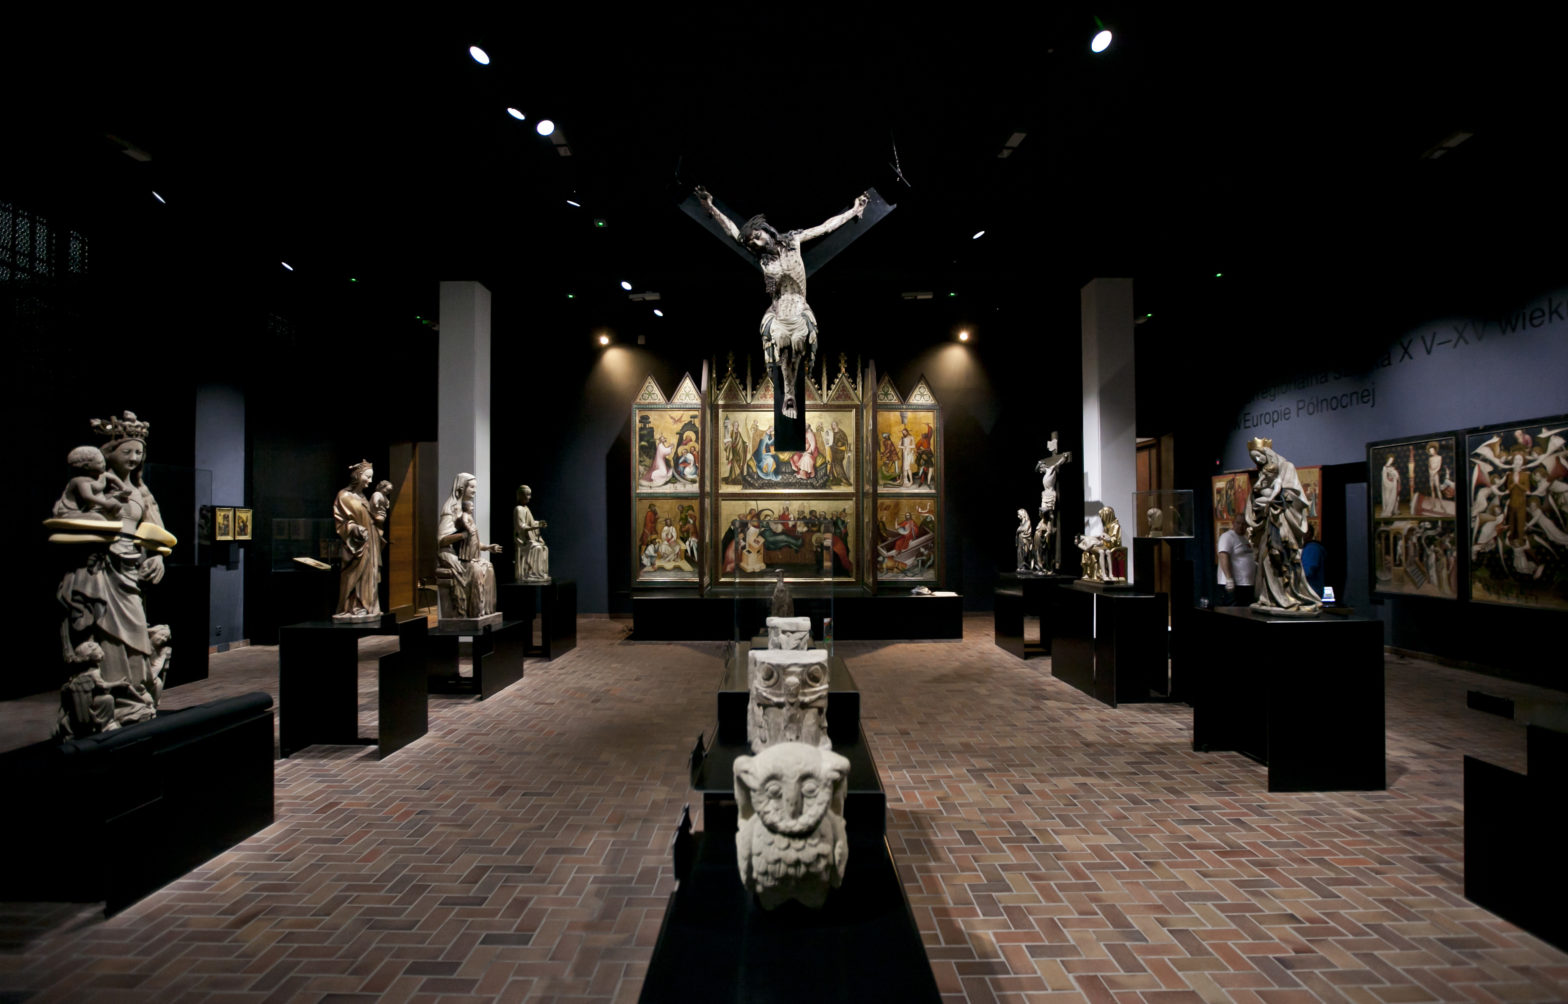 Sala muzealna, na jej końcu stoi tryptyk, przedstawiający motywy religijne, do niego prowadzi szpaler rzeźb świętych. Po środku sali znajdują się rzeźby zwierząt, nad nimi wisi rzeźba ukrzyżowanego Jezusa.